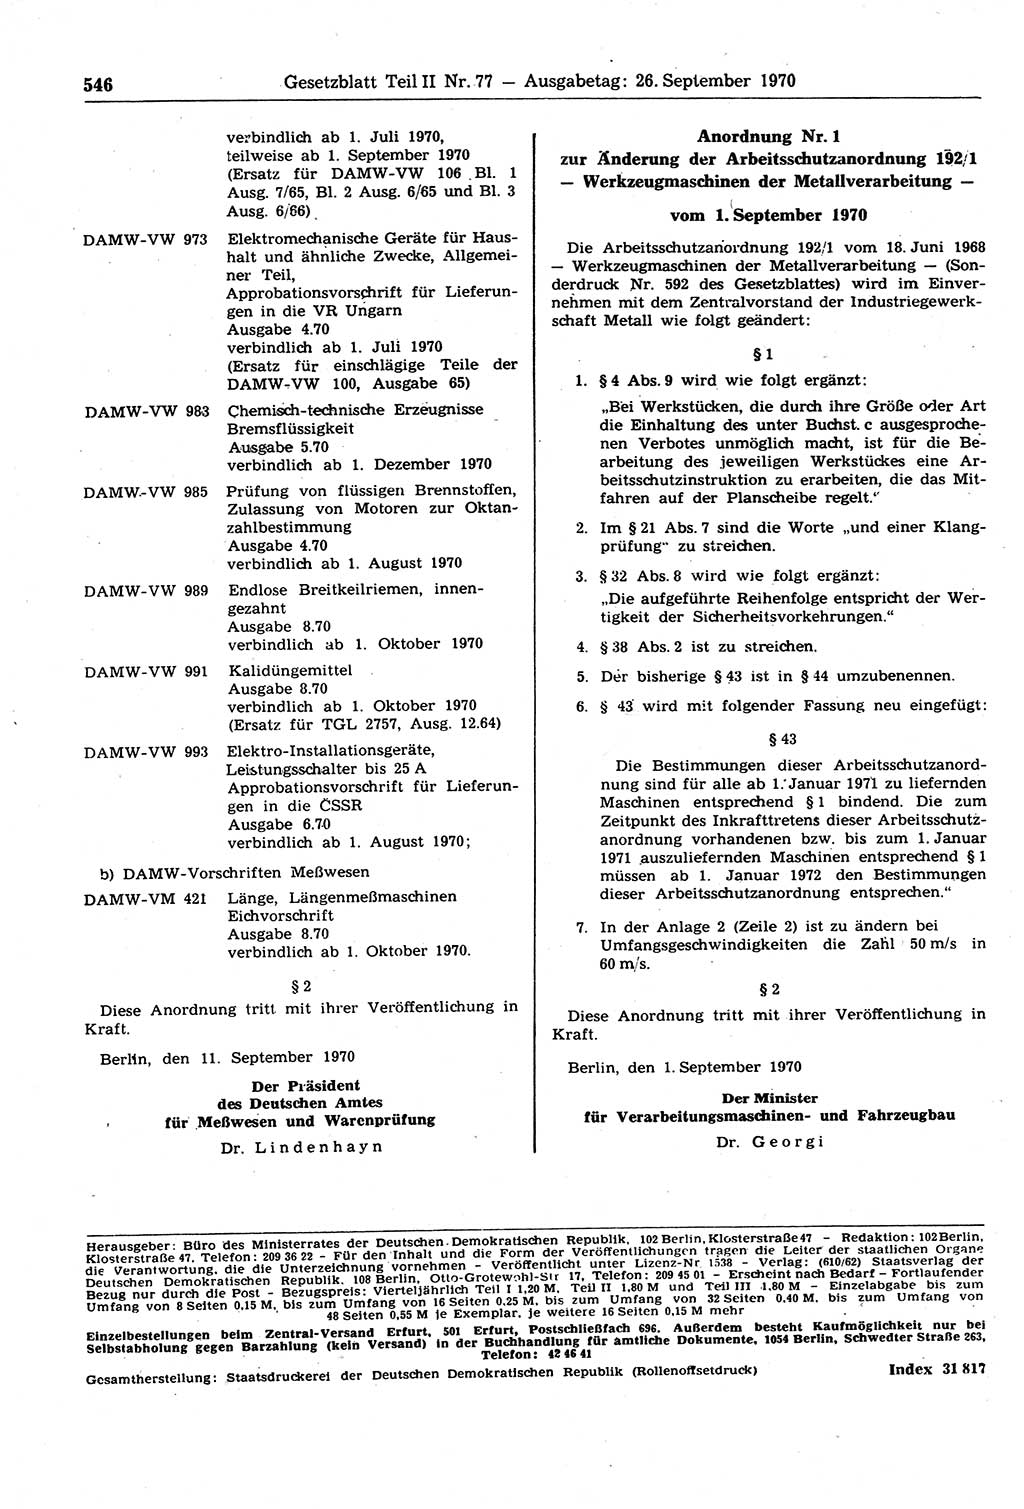 Gesetzblatt (GBl.) der Deutschen Demokratischen Republik (DDR) Teil ⅠⅠ 1970, Seite 546 (GBl. DDR ⅠⅠ 1970, S. 546)